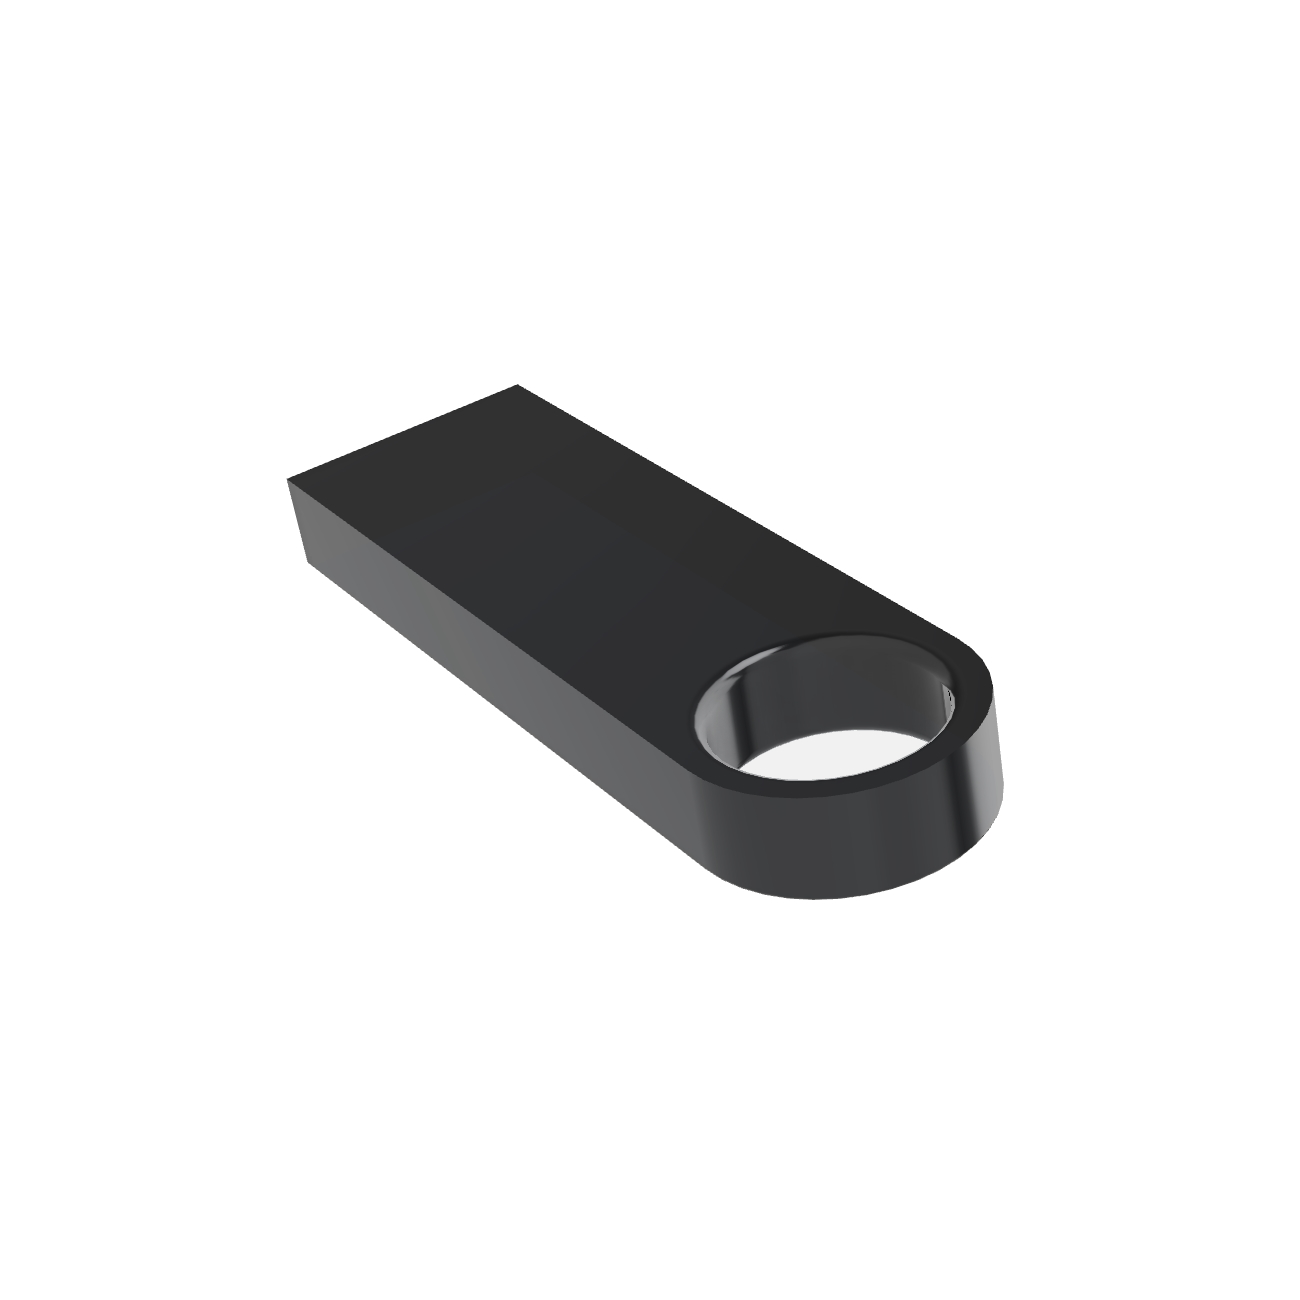 USB GERMANY ® SE09 USB-Stick 4 GB) (Schwarz